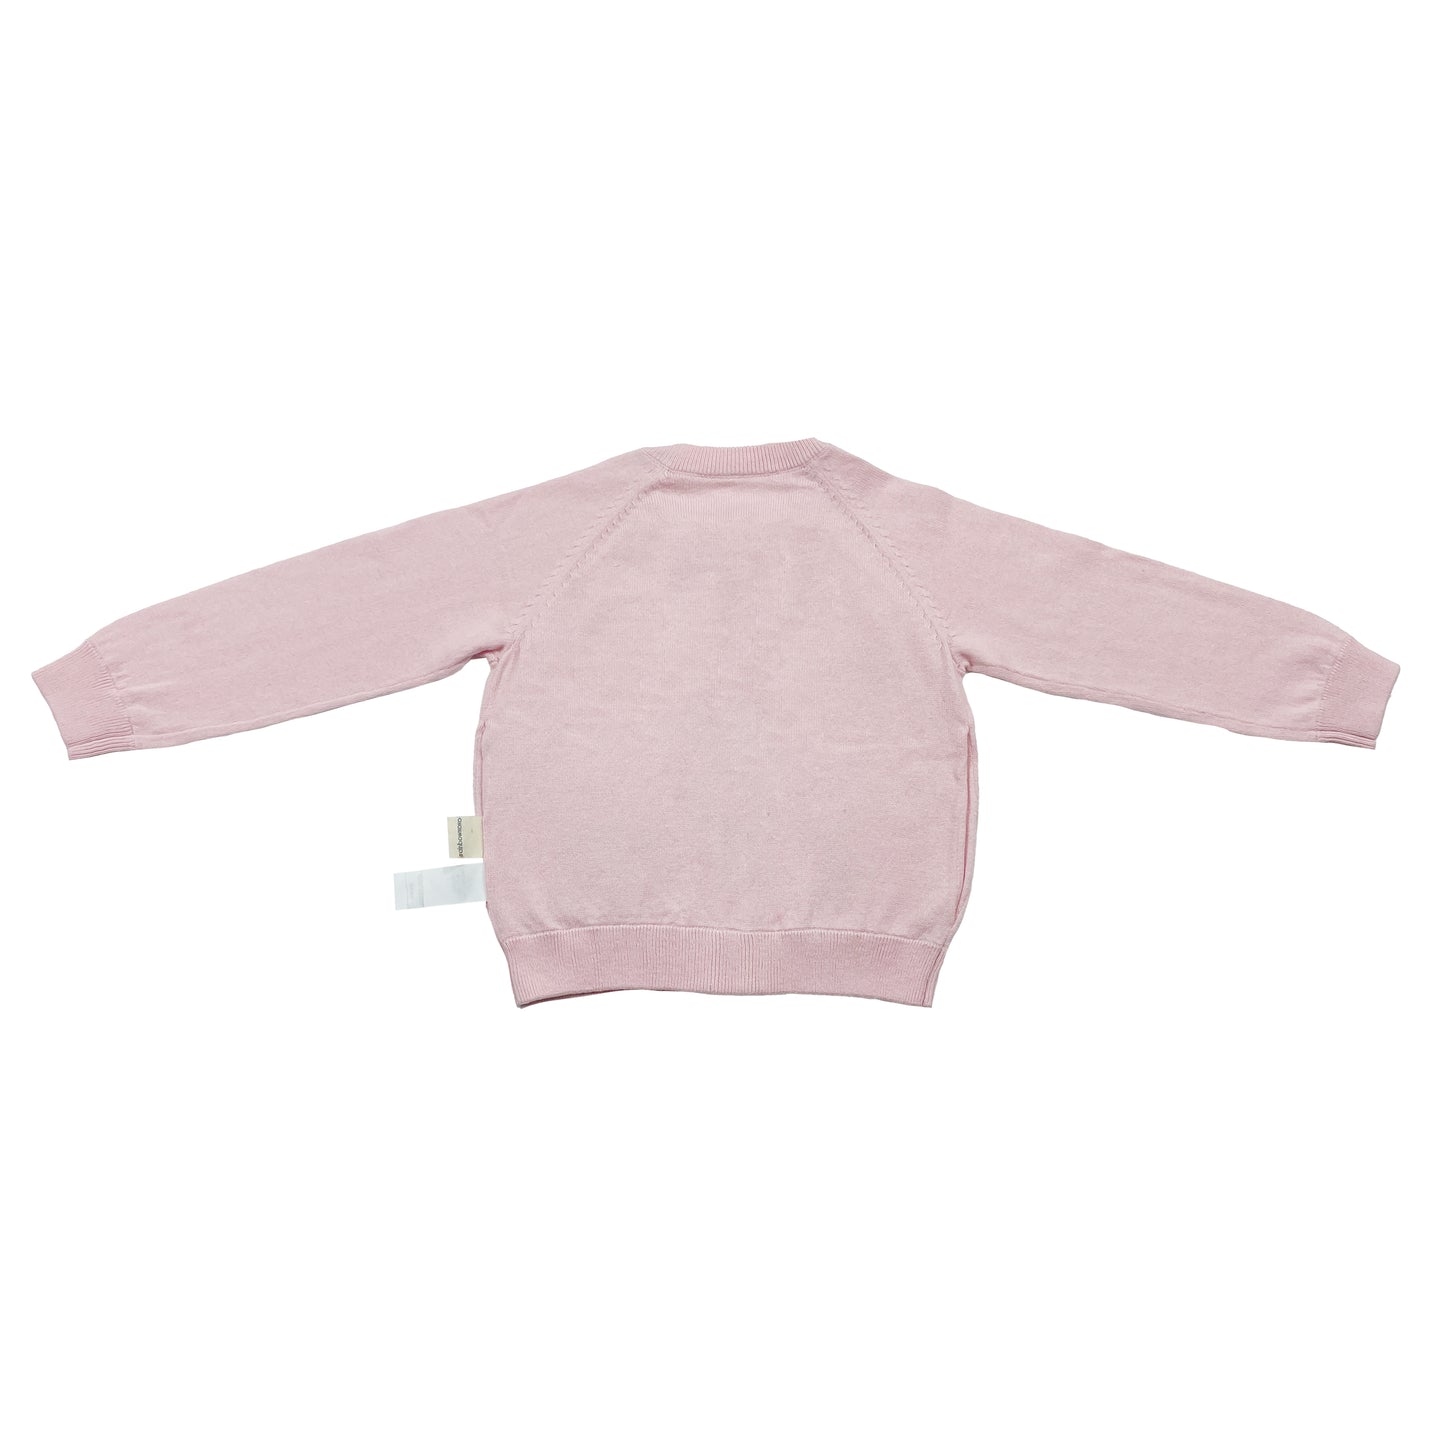 童裝BB衫/女童裝有機棉 - 粉紅色猫頭鷹圖案羊絨混棉拉鍊外套